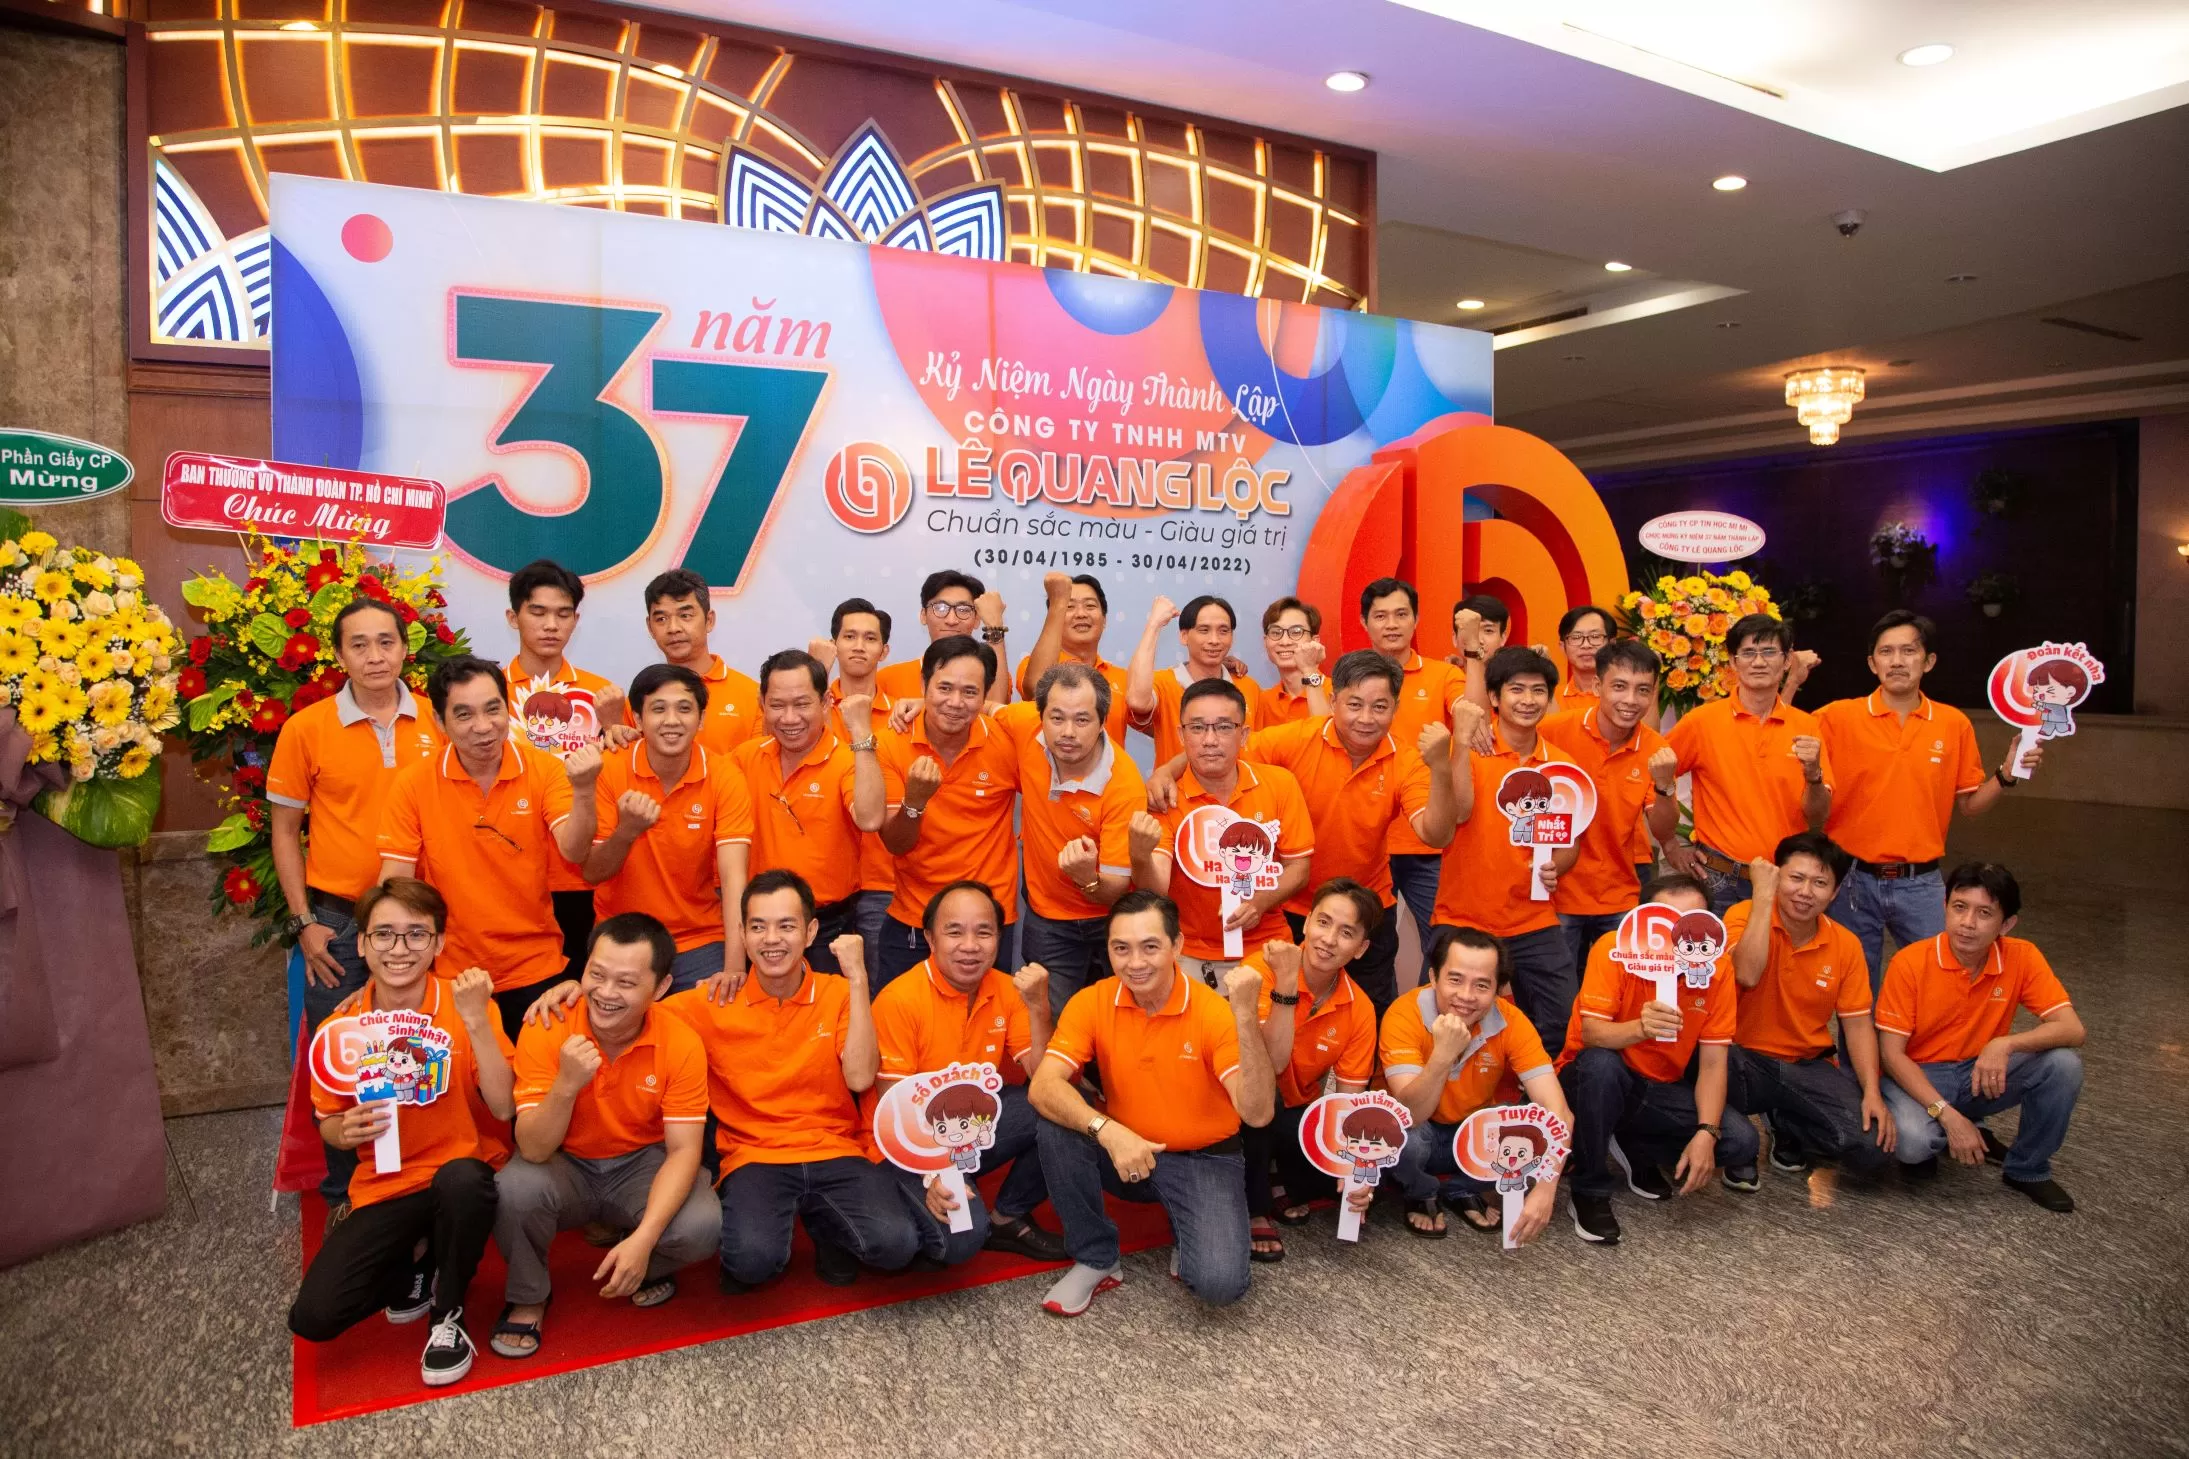 Chào mừng kỷ niệm 37 năm thành lập Công ty TNHH MTV Lê Quang Lộc (30/4/1985 – 30/4/2022)